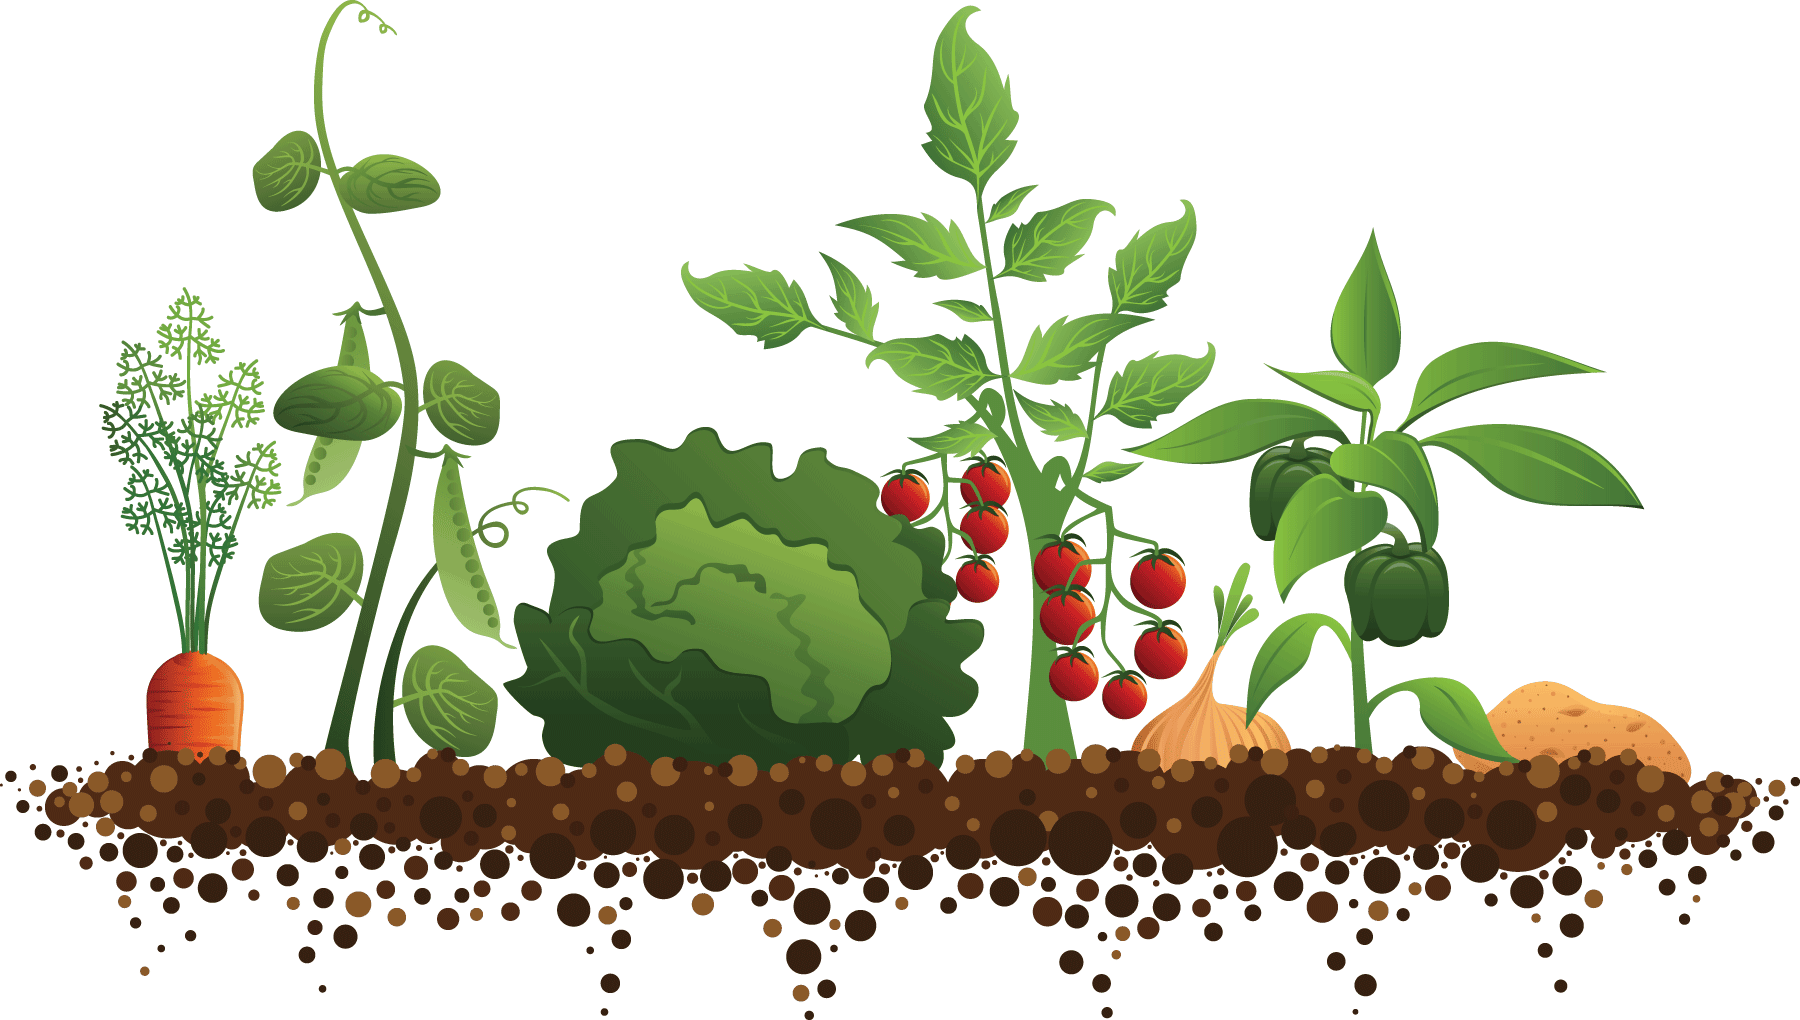 Сельское хозяйство - Растениеводство - фрукты и овощи - Crop production